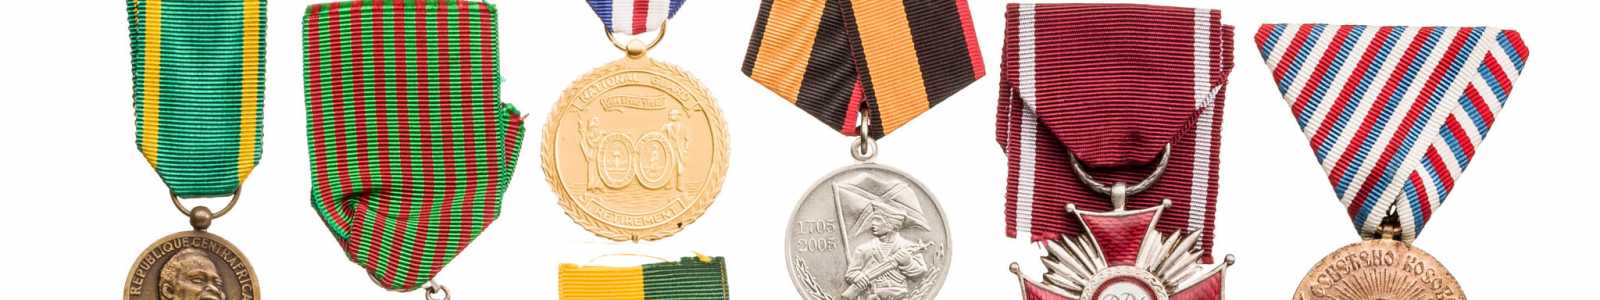 O88: Международные медали и военно-исторические предметы коллекционирования